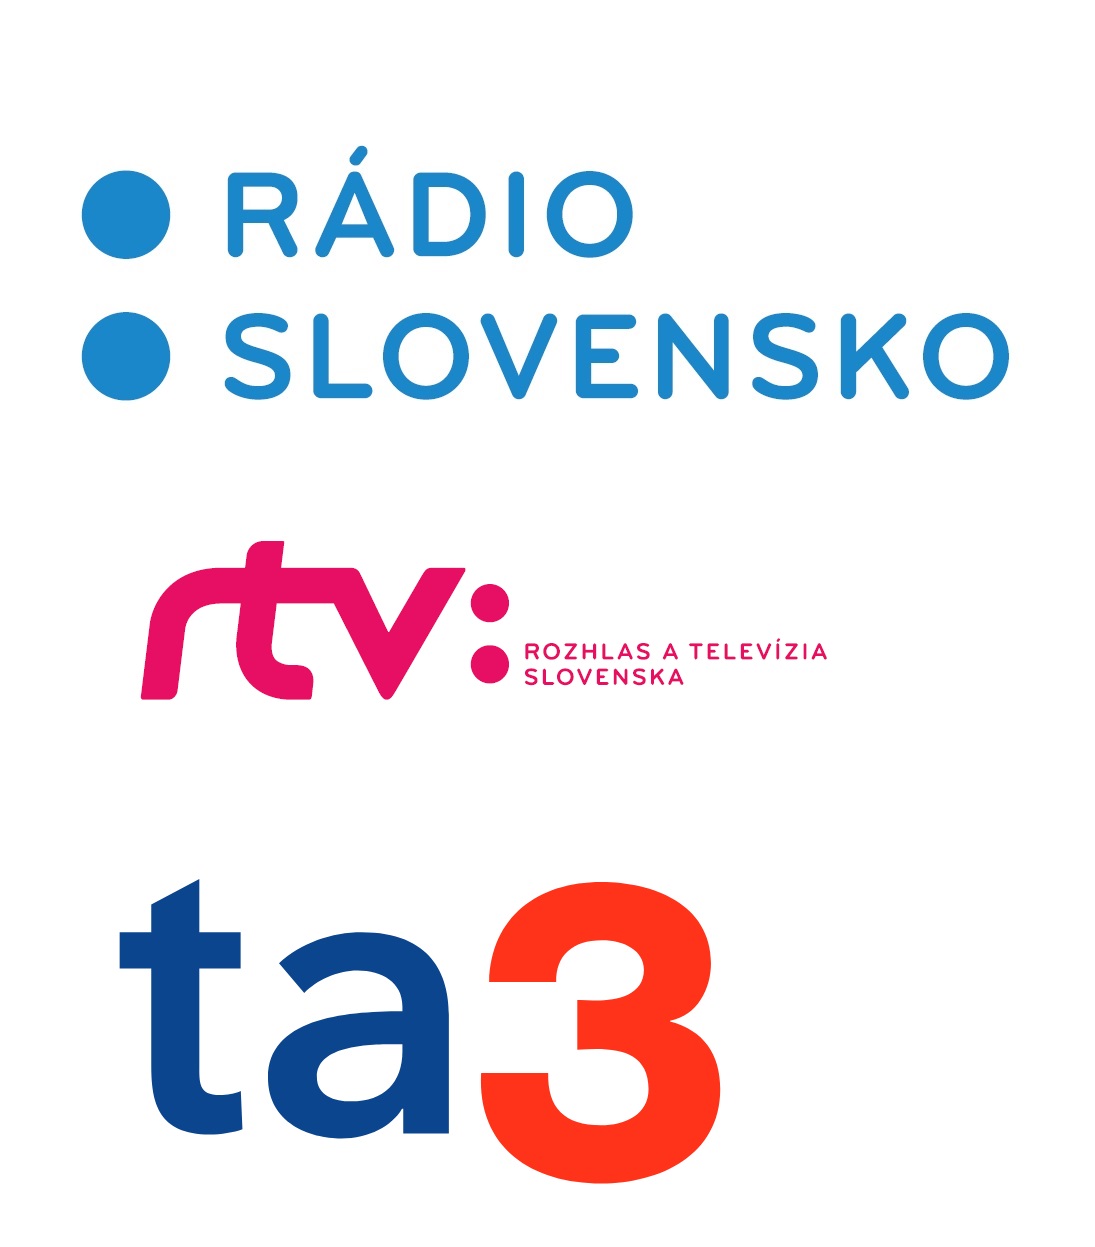 Rádio Slovensko